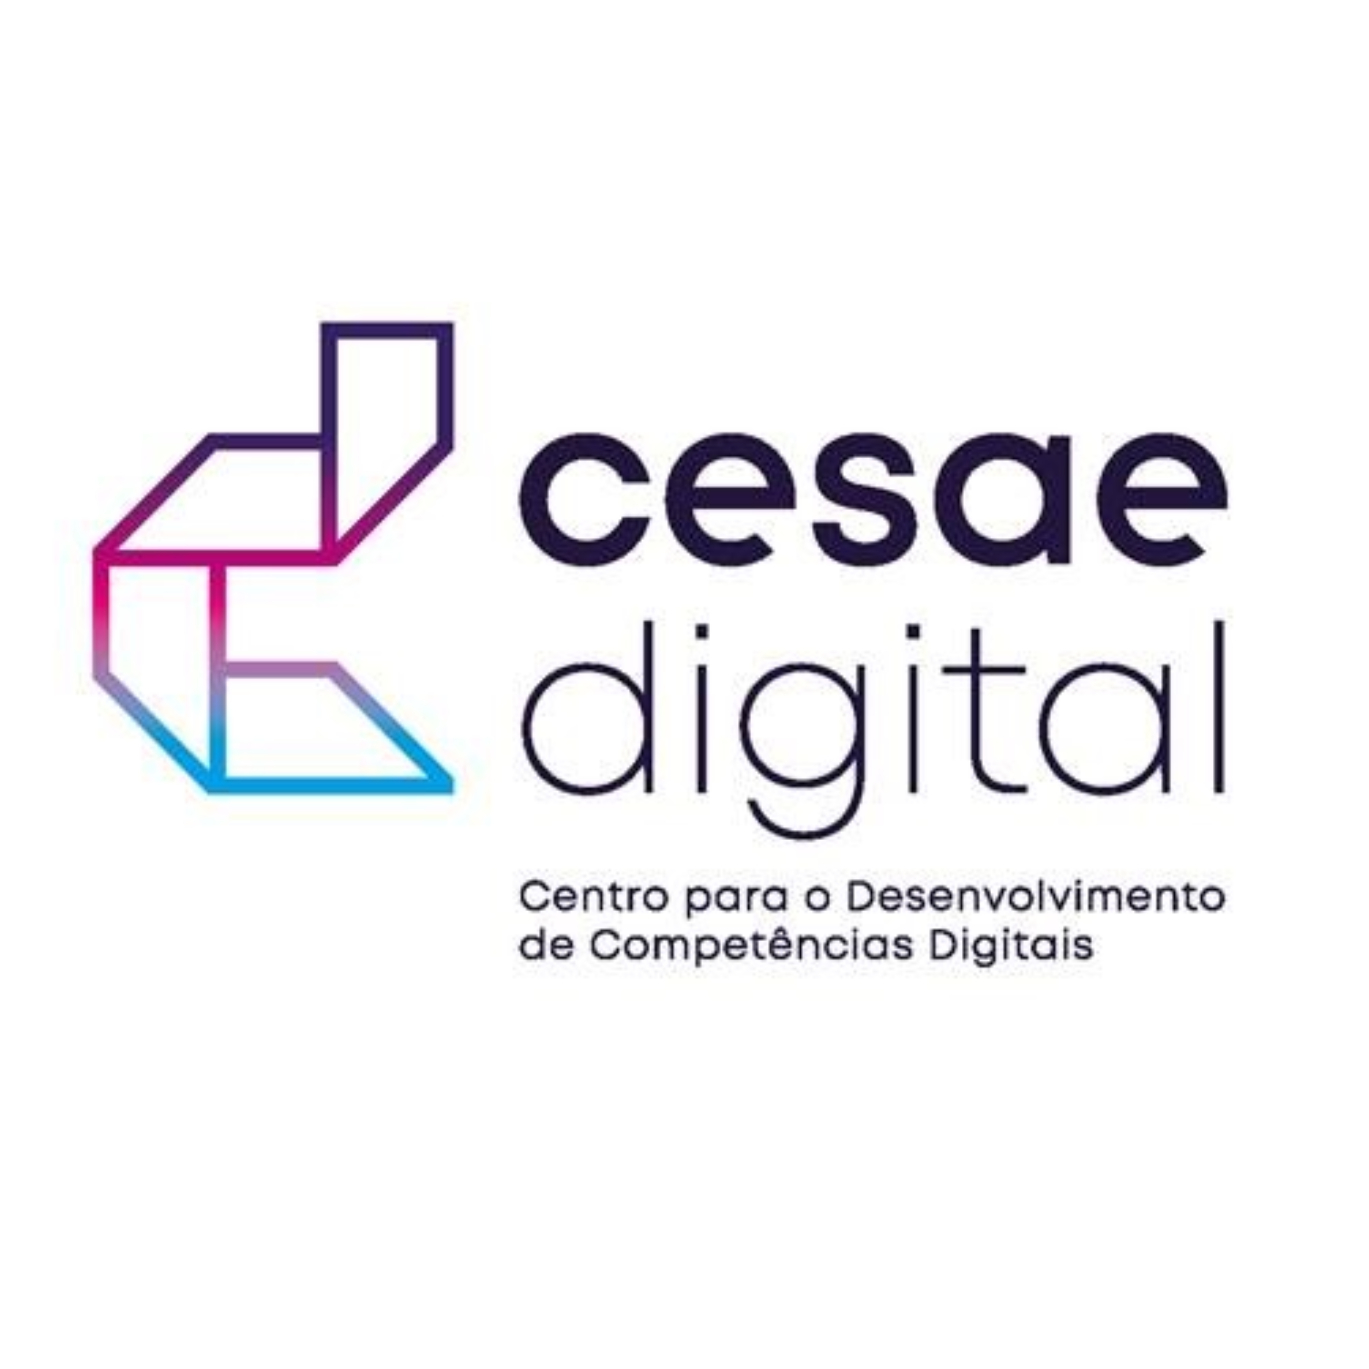 CESAE Digital - Centro para o Desenvolvimento de Competências Digitais